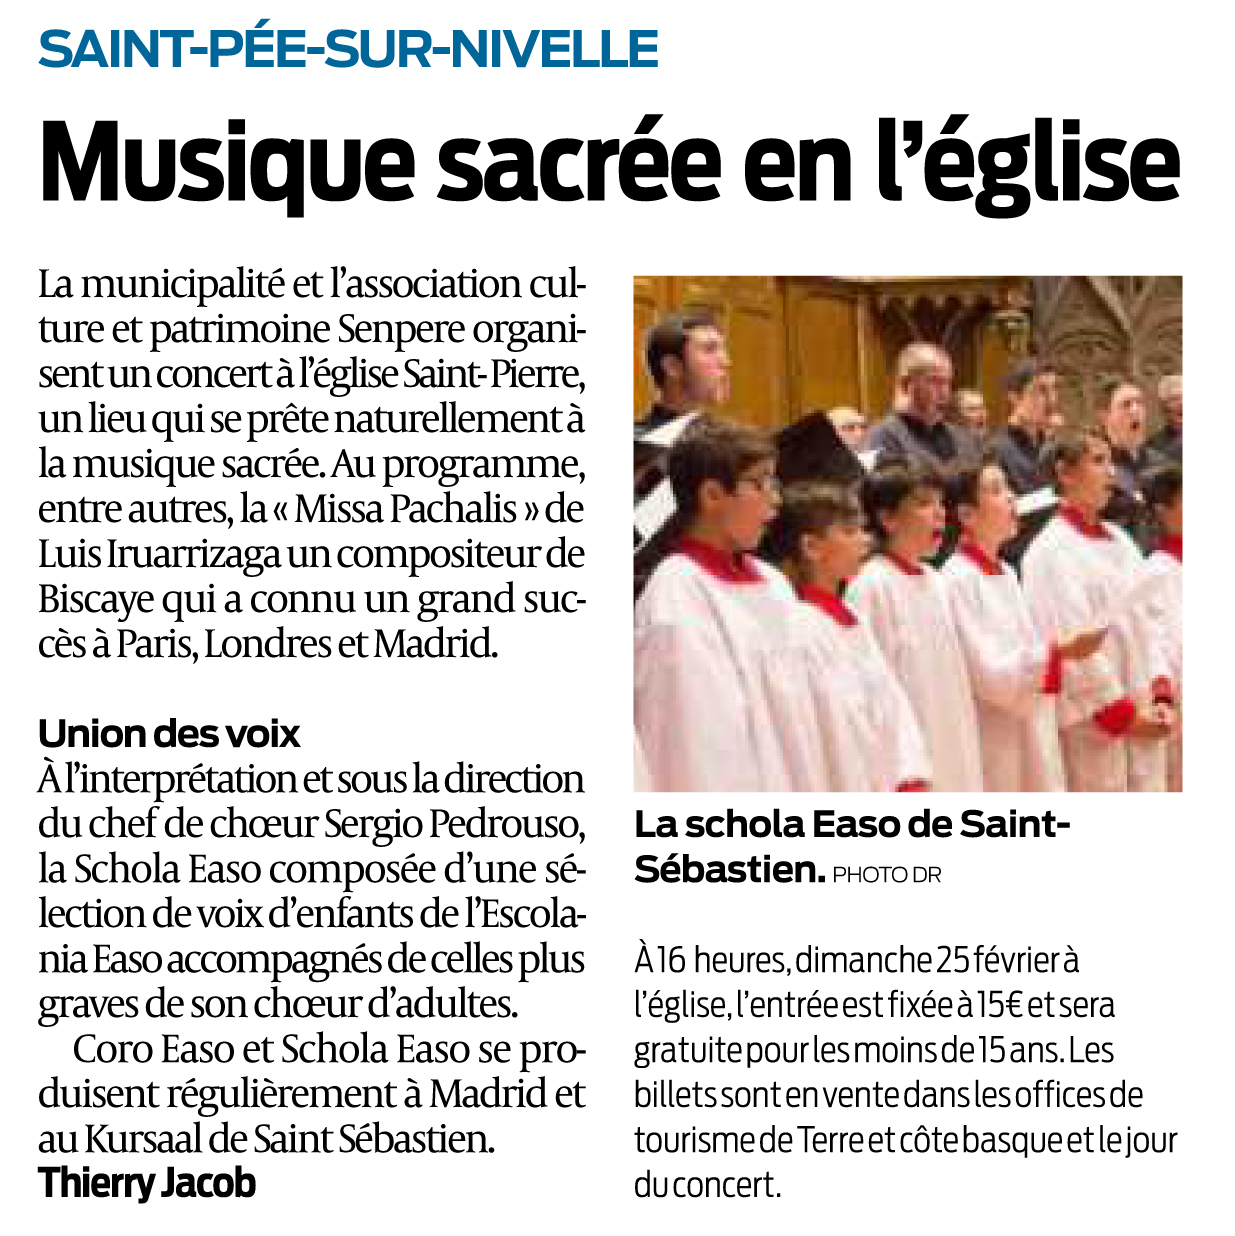 Articles de Sud-ouest du 19 février 2018 - Saint-Pée-sur-Nivelle - Concert de musique sacrée en l'église